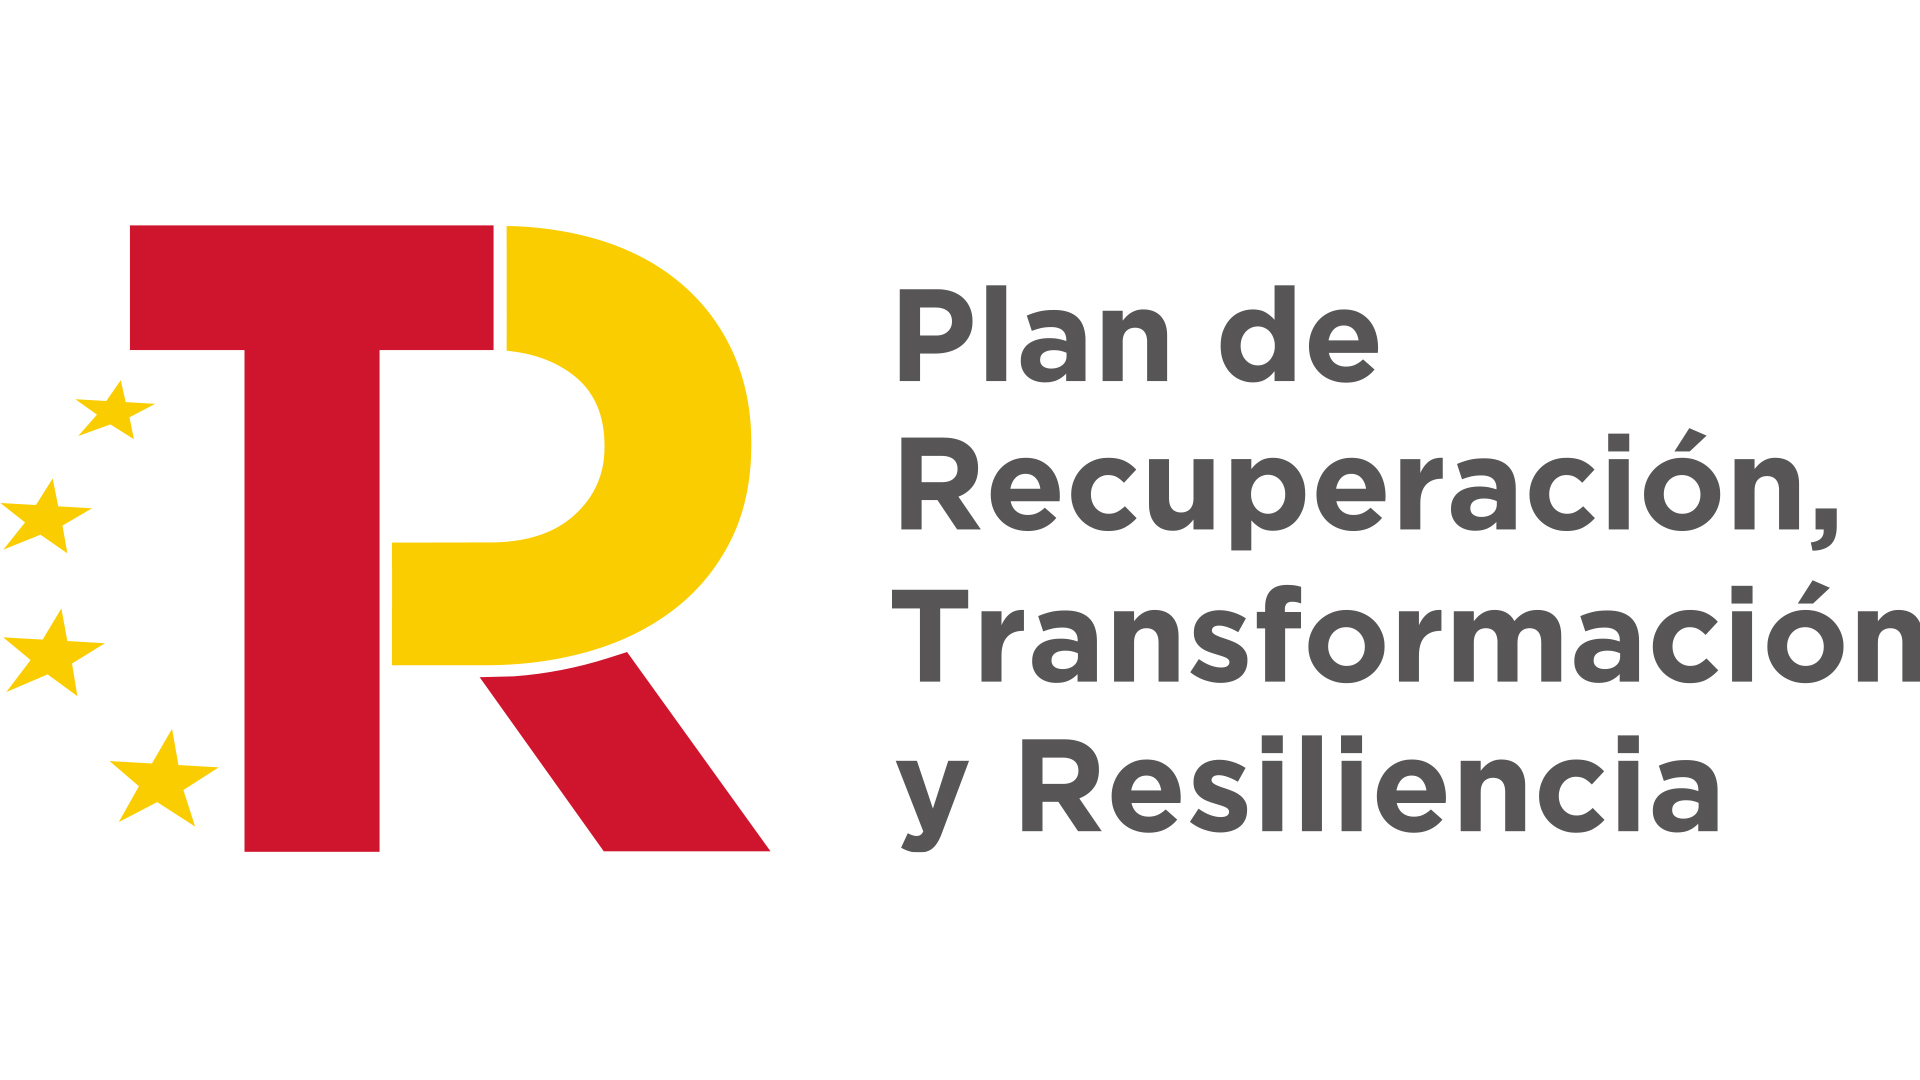 Logotipo del Plan de Recuperación, Transformación y Resiliencia del Gobierno de España